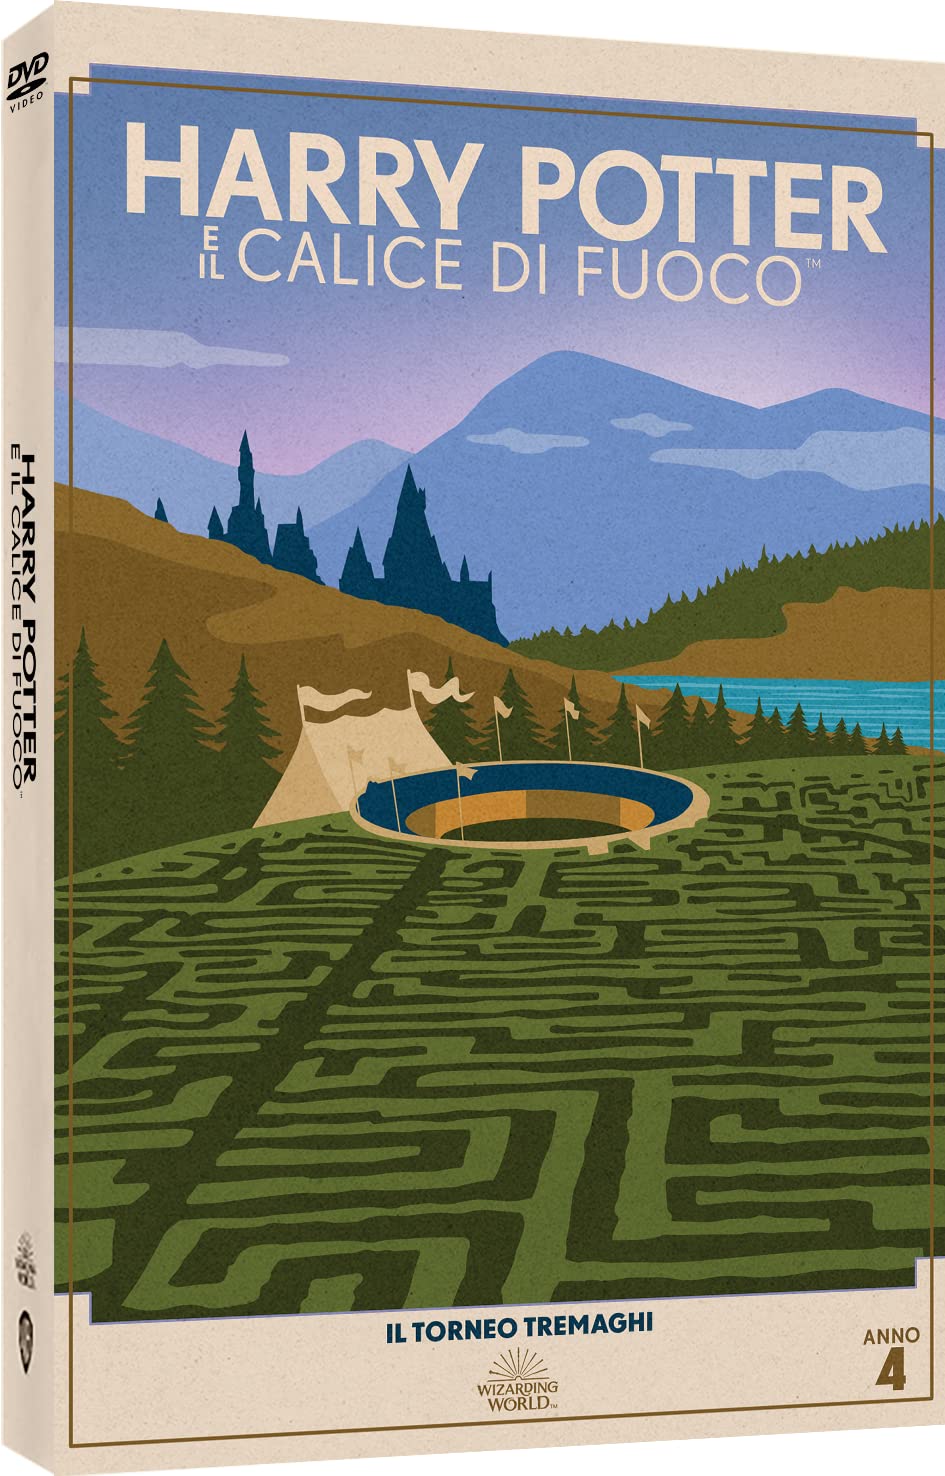 Harry Potter E Il Calice Di Fuoco (Travel Art) - DVD